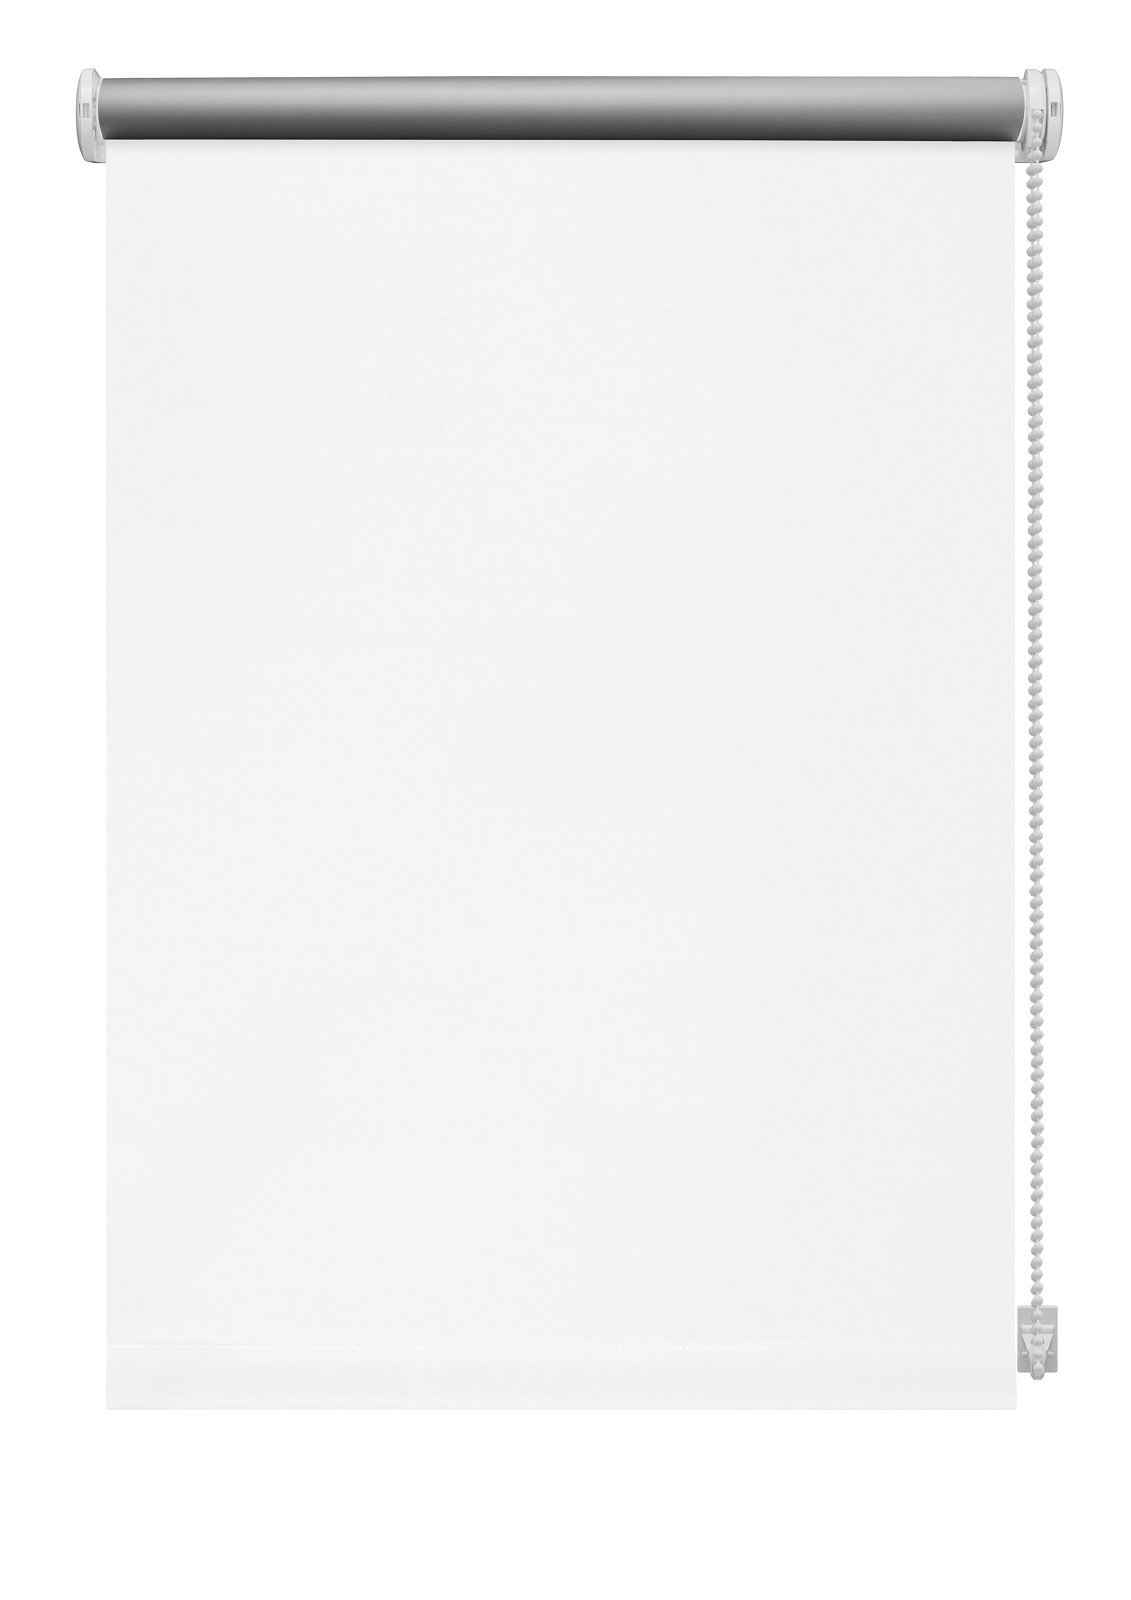 Klasikinė ritininė užuolaida THERMO 905, baltos sp., 200 x 210 cm - 2